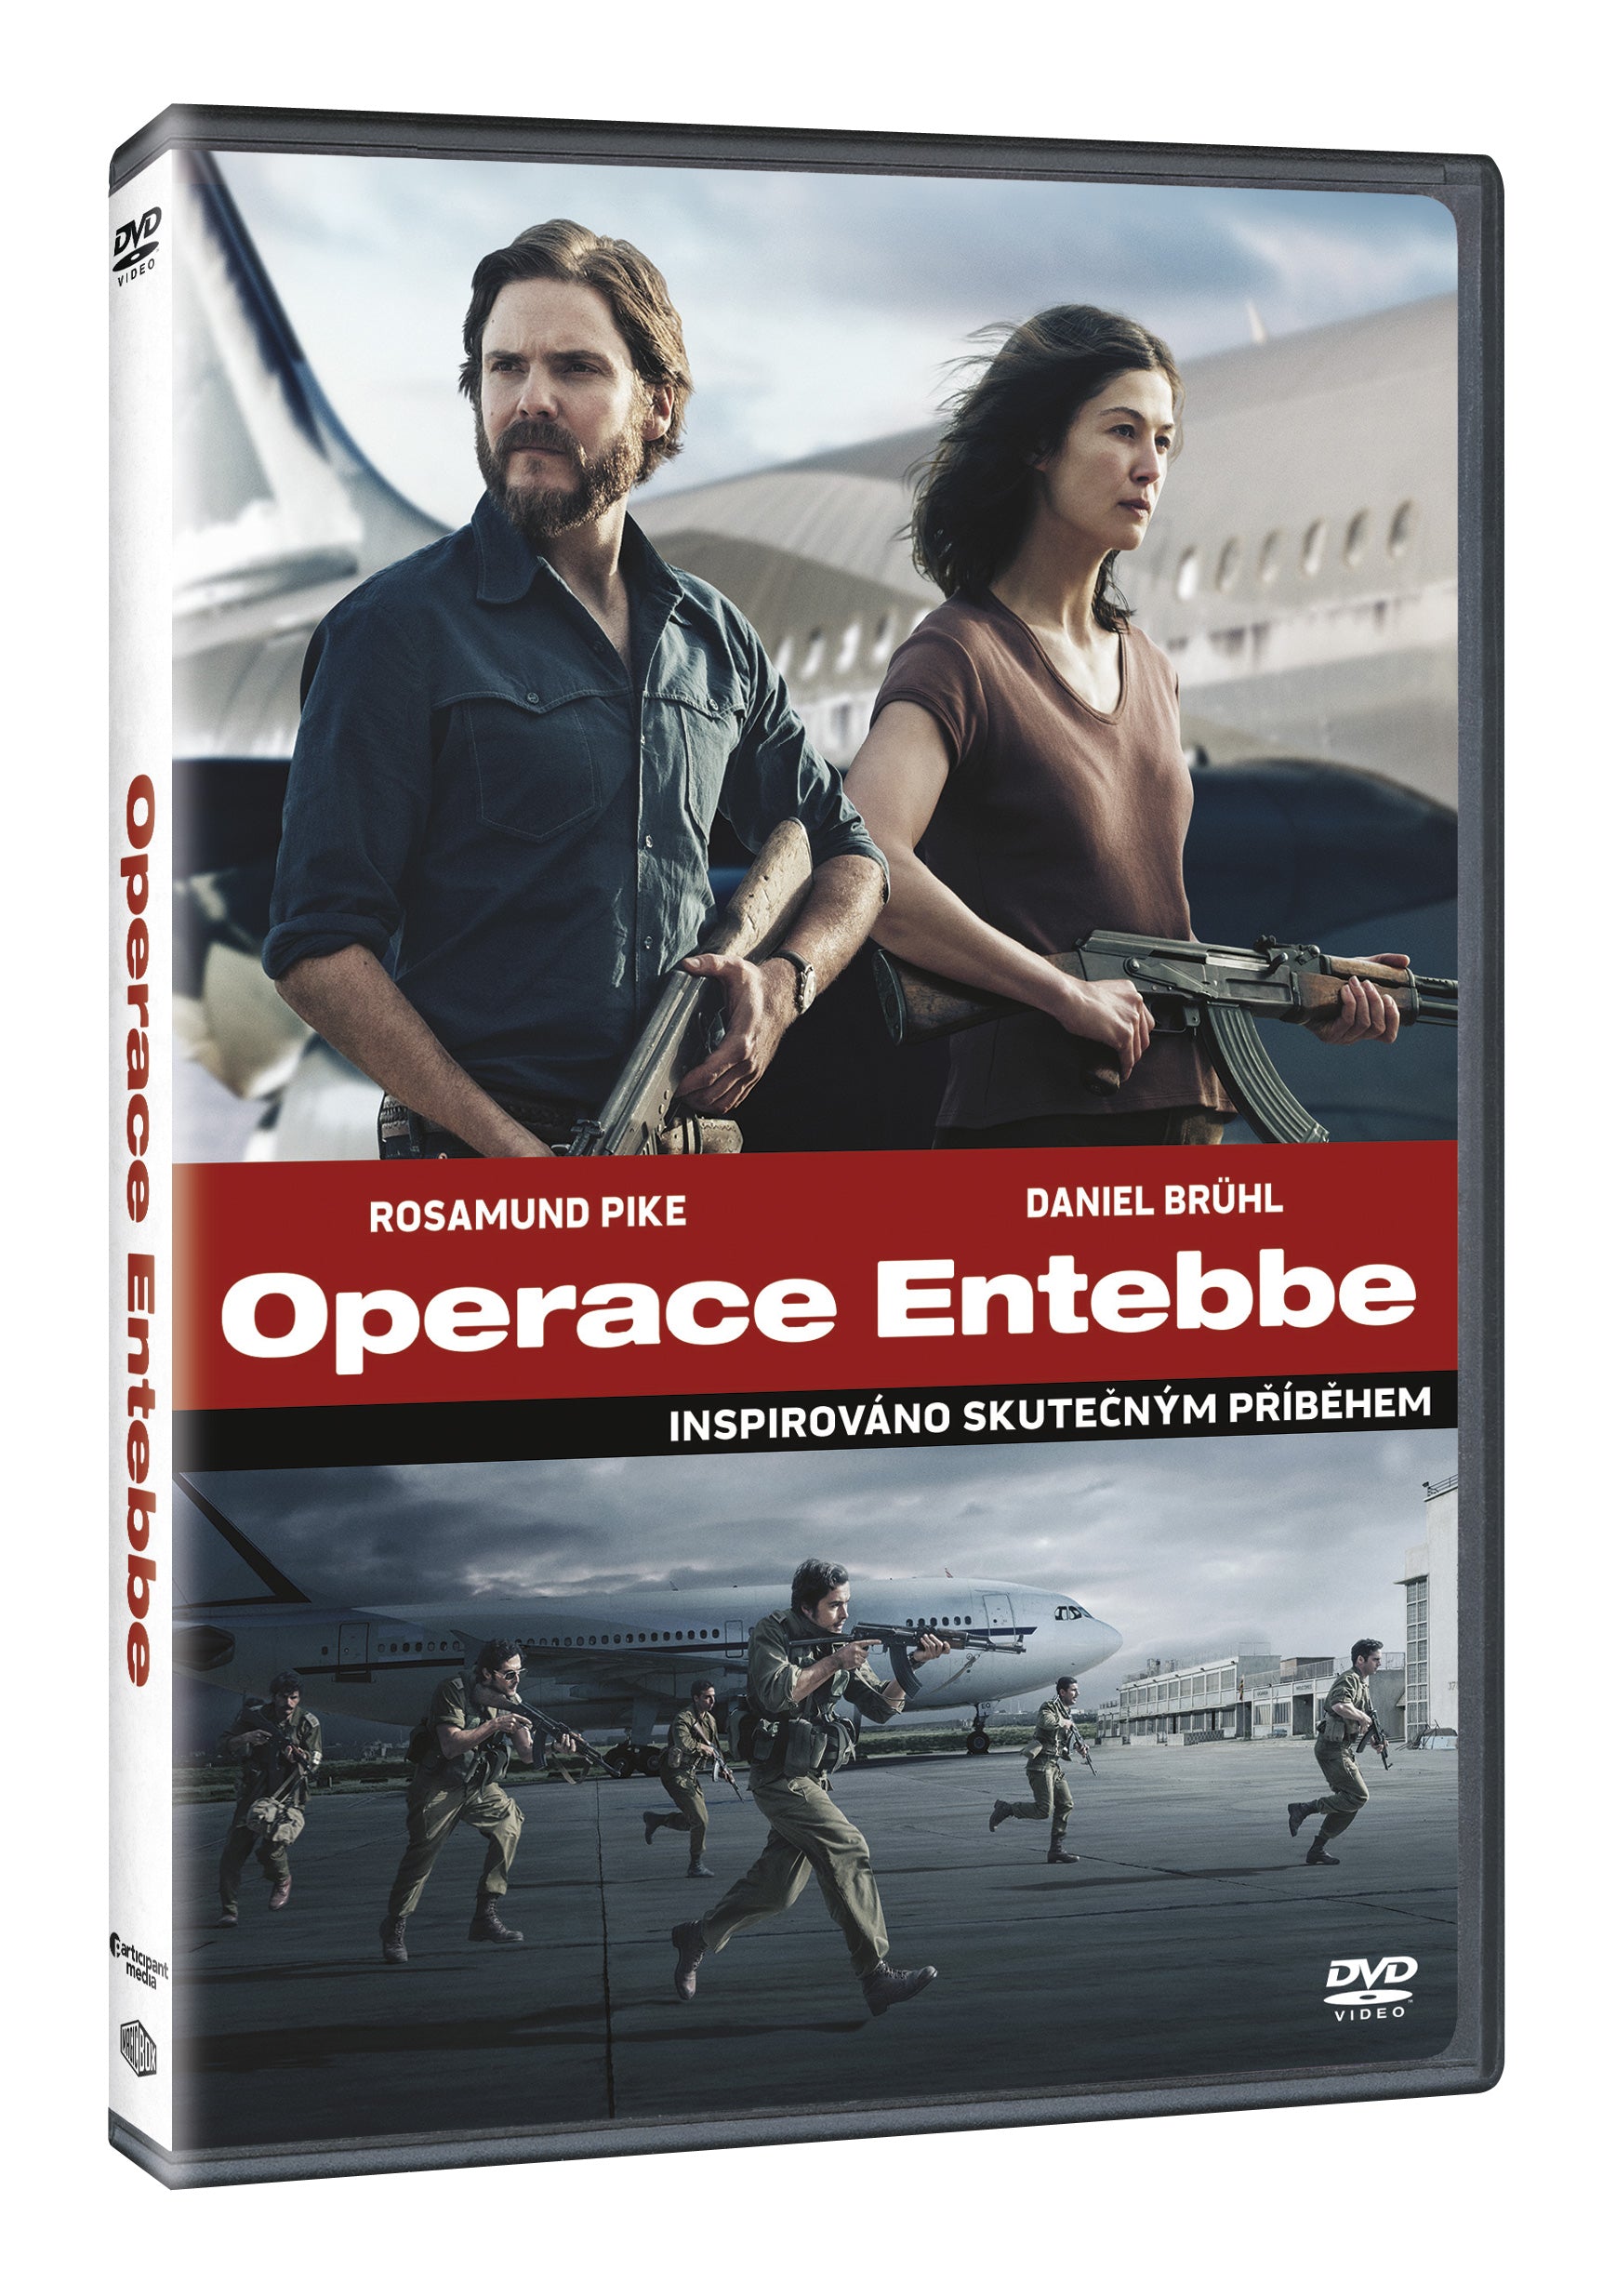 Operace Entebbe DVD / 7 Tage in Entebbe